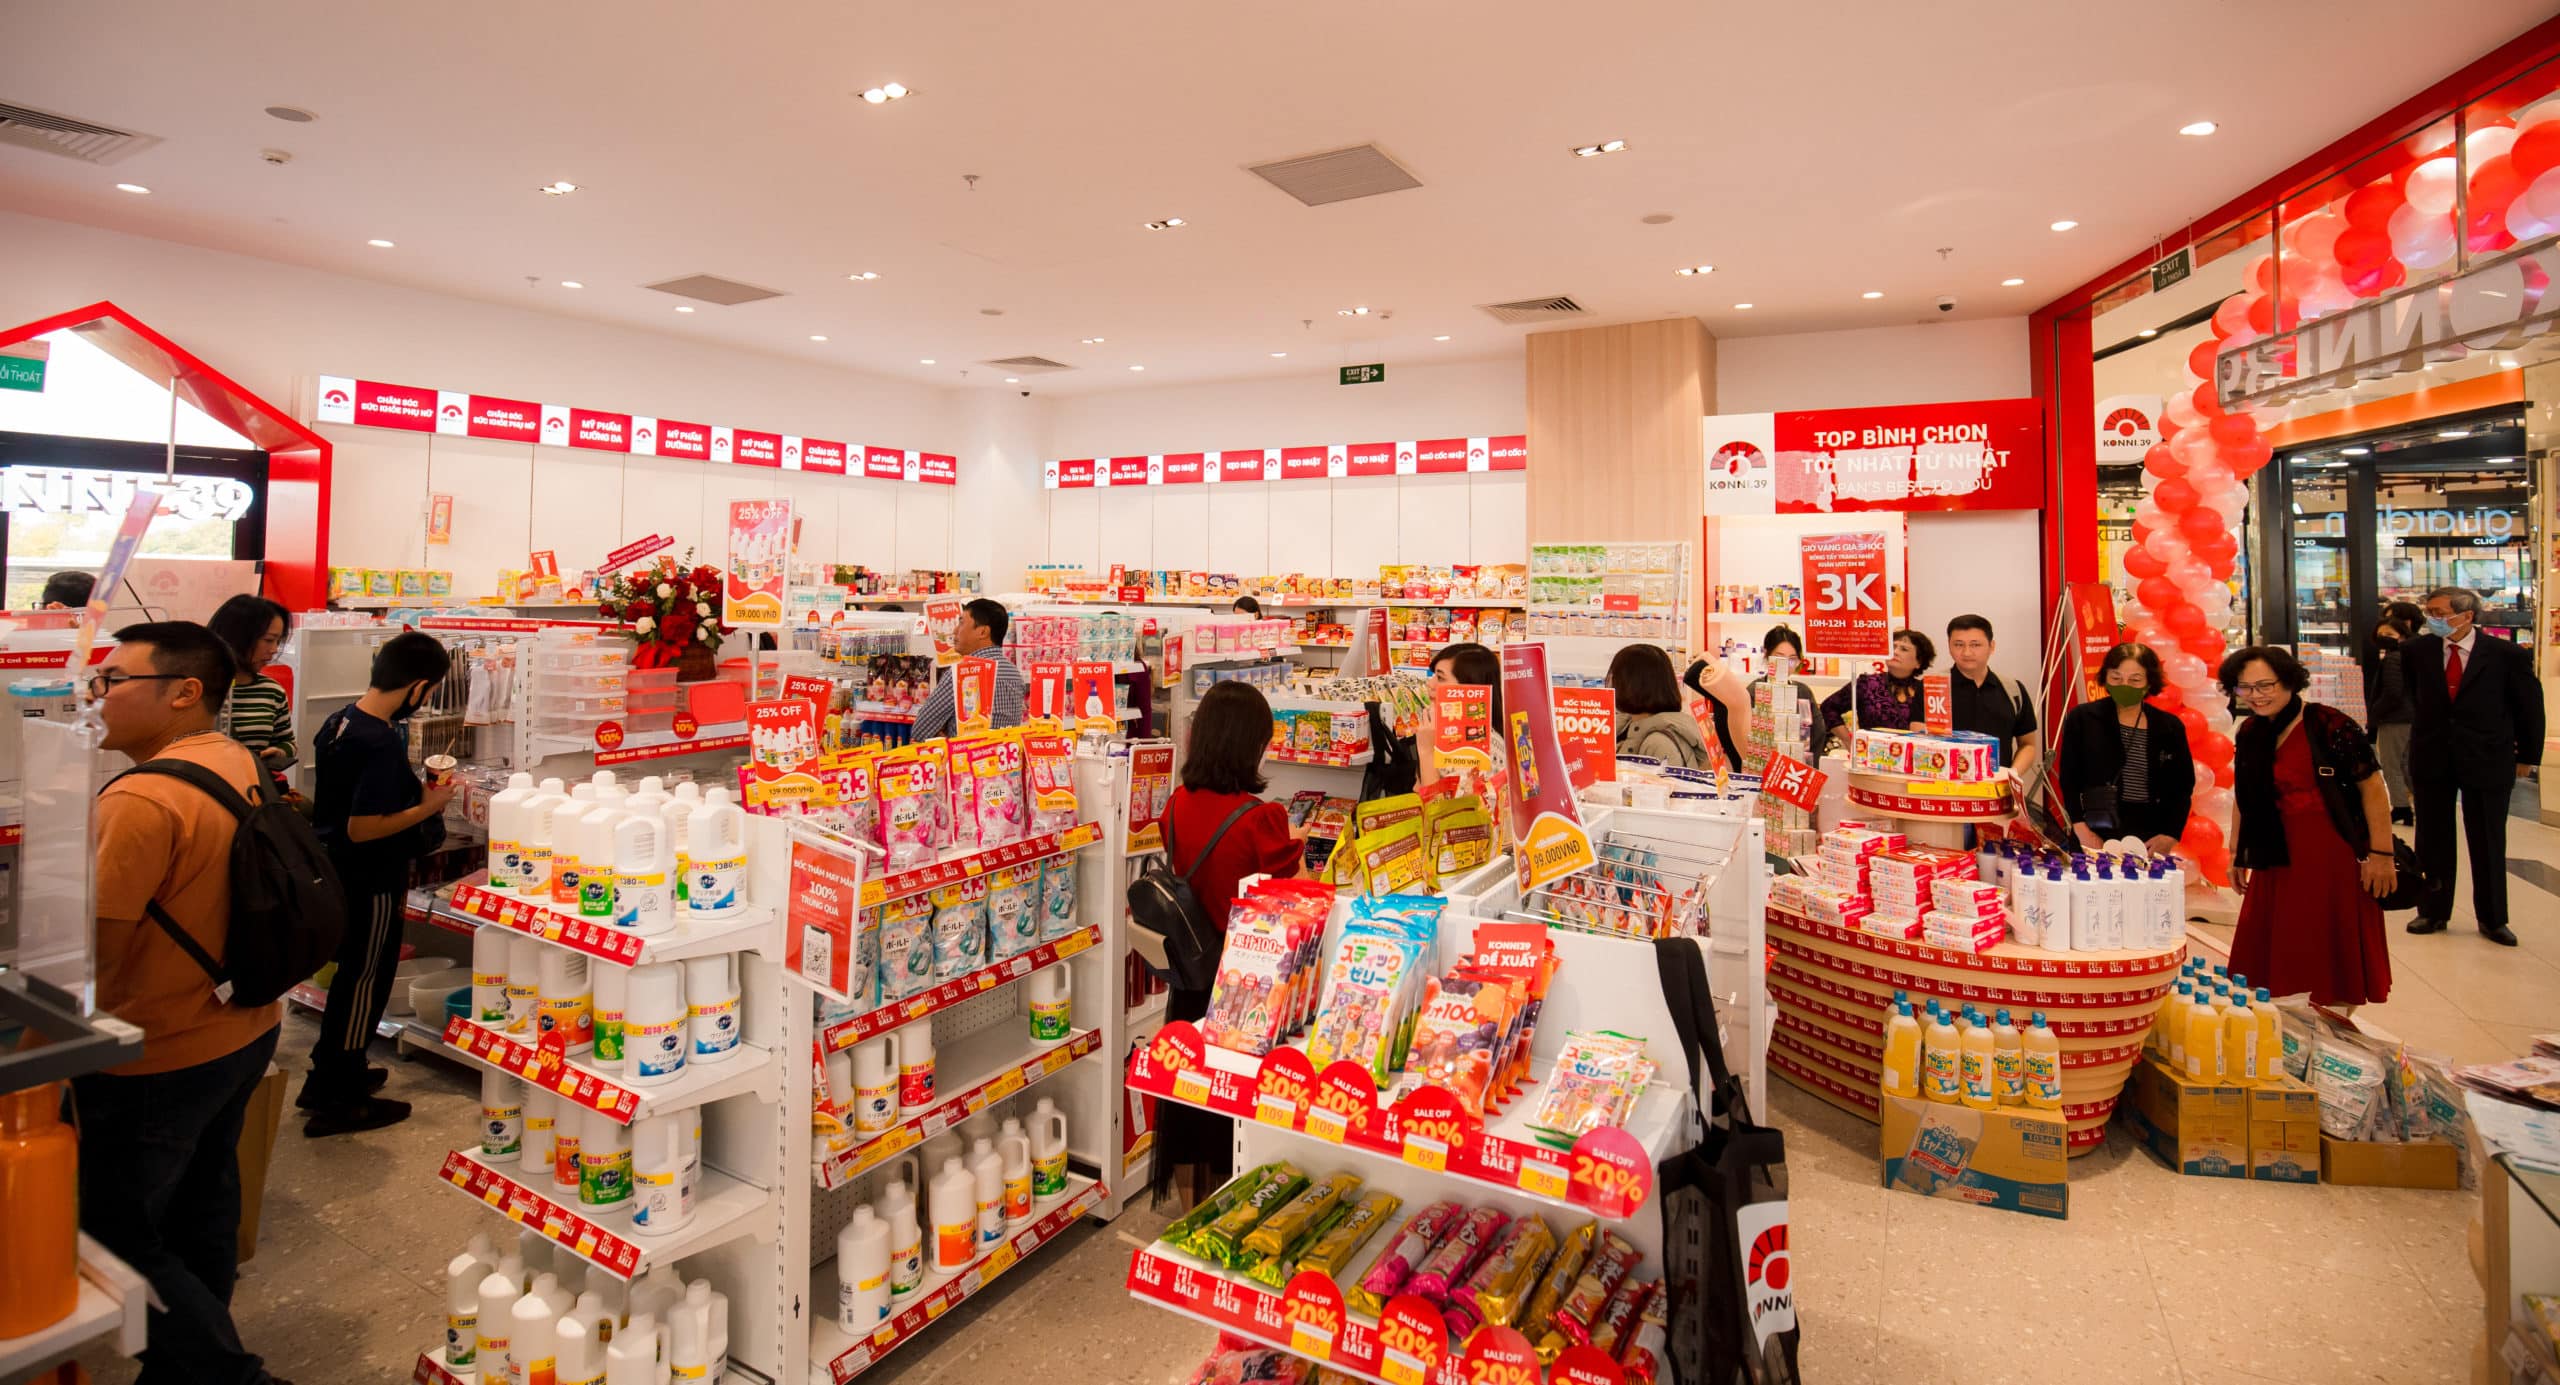 Hợp tác với các nhà cung cấp hàng đầu Nhật Bản giúp đảm bảo chất lượng hàng lưu hành trong chuỗi cửa hàng Konni39